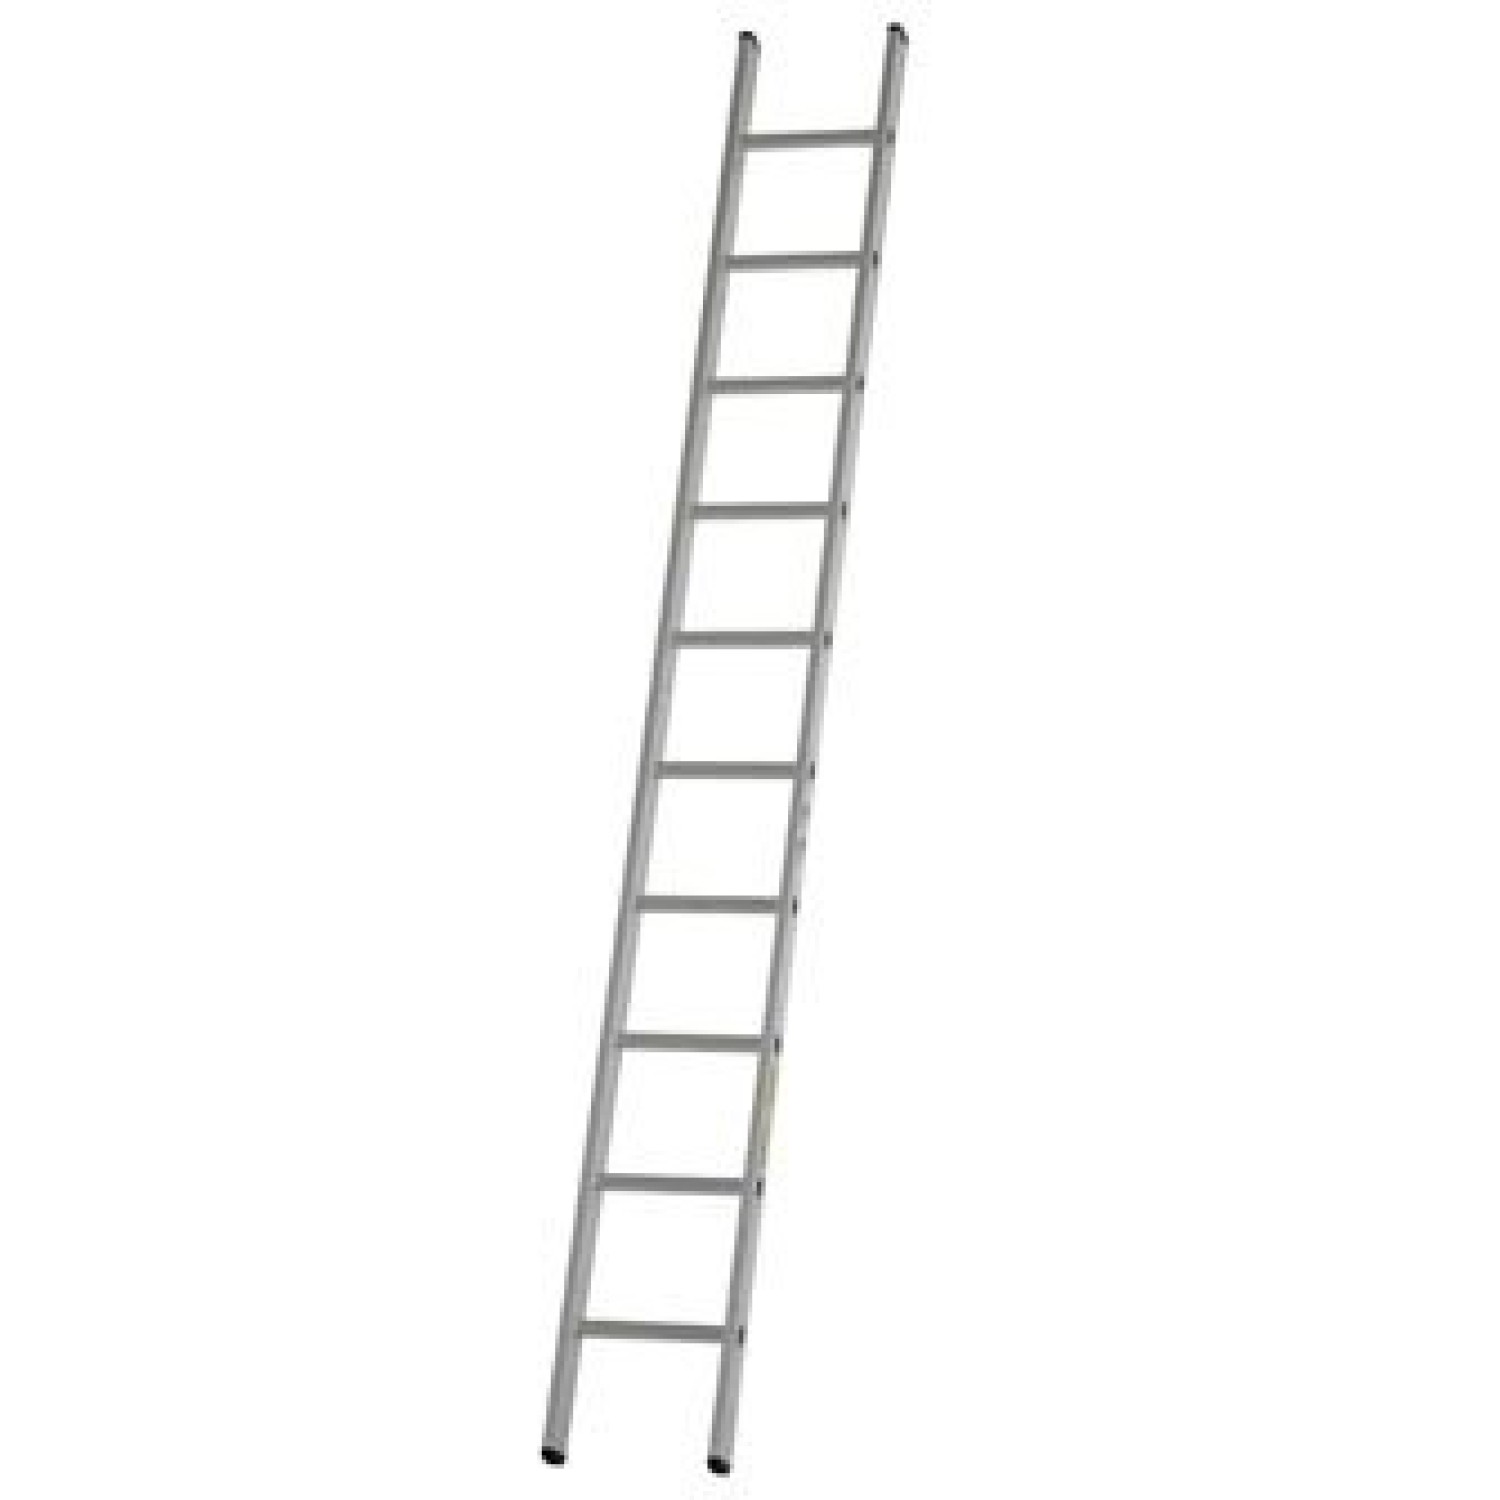 dirks enkele rechte ladder 58 meter gecoat